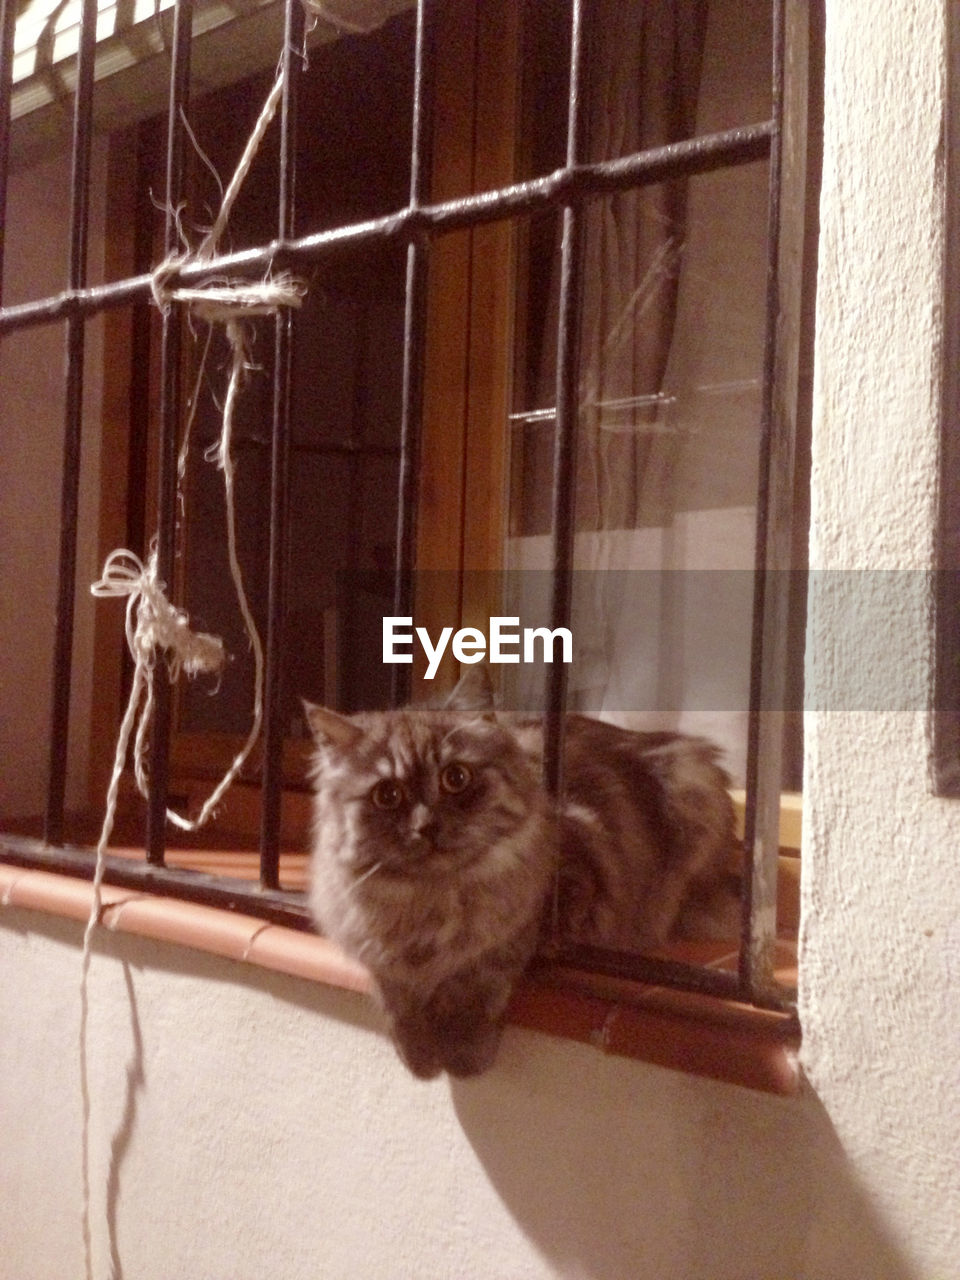 Portrait of cat sitting in window